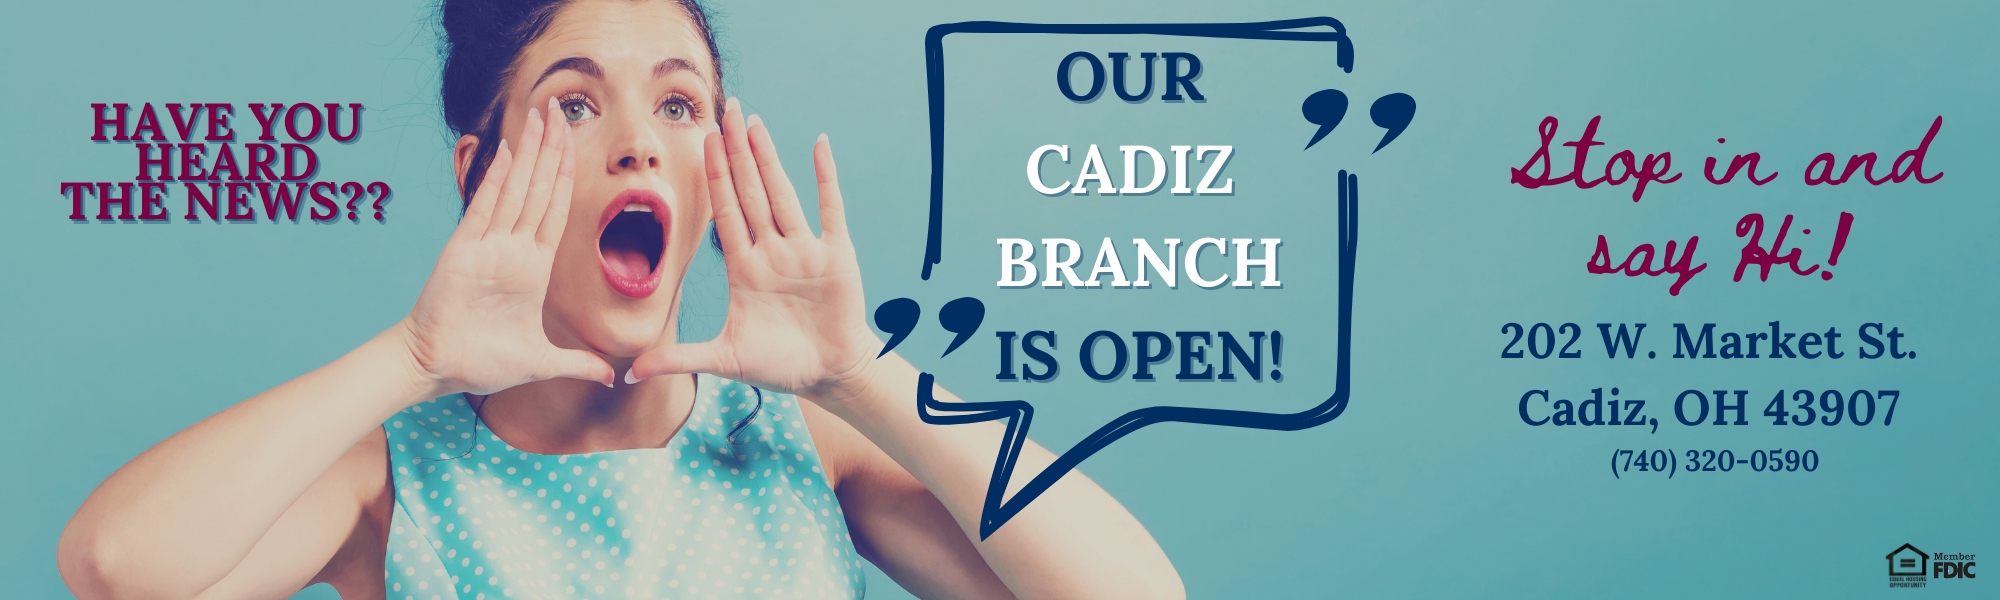 Our Cadiz Branch is Open! 202 West Market Street in Cadiz Ohio